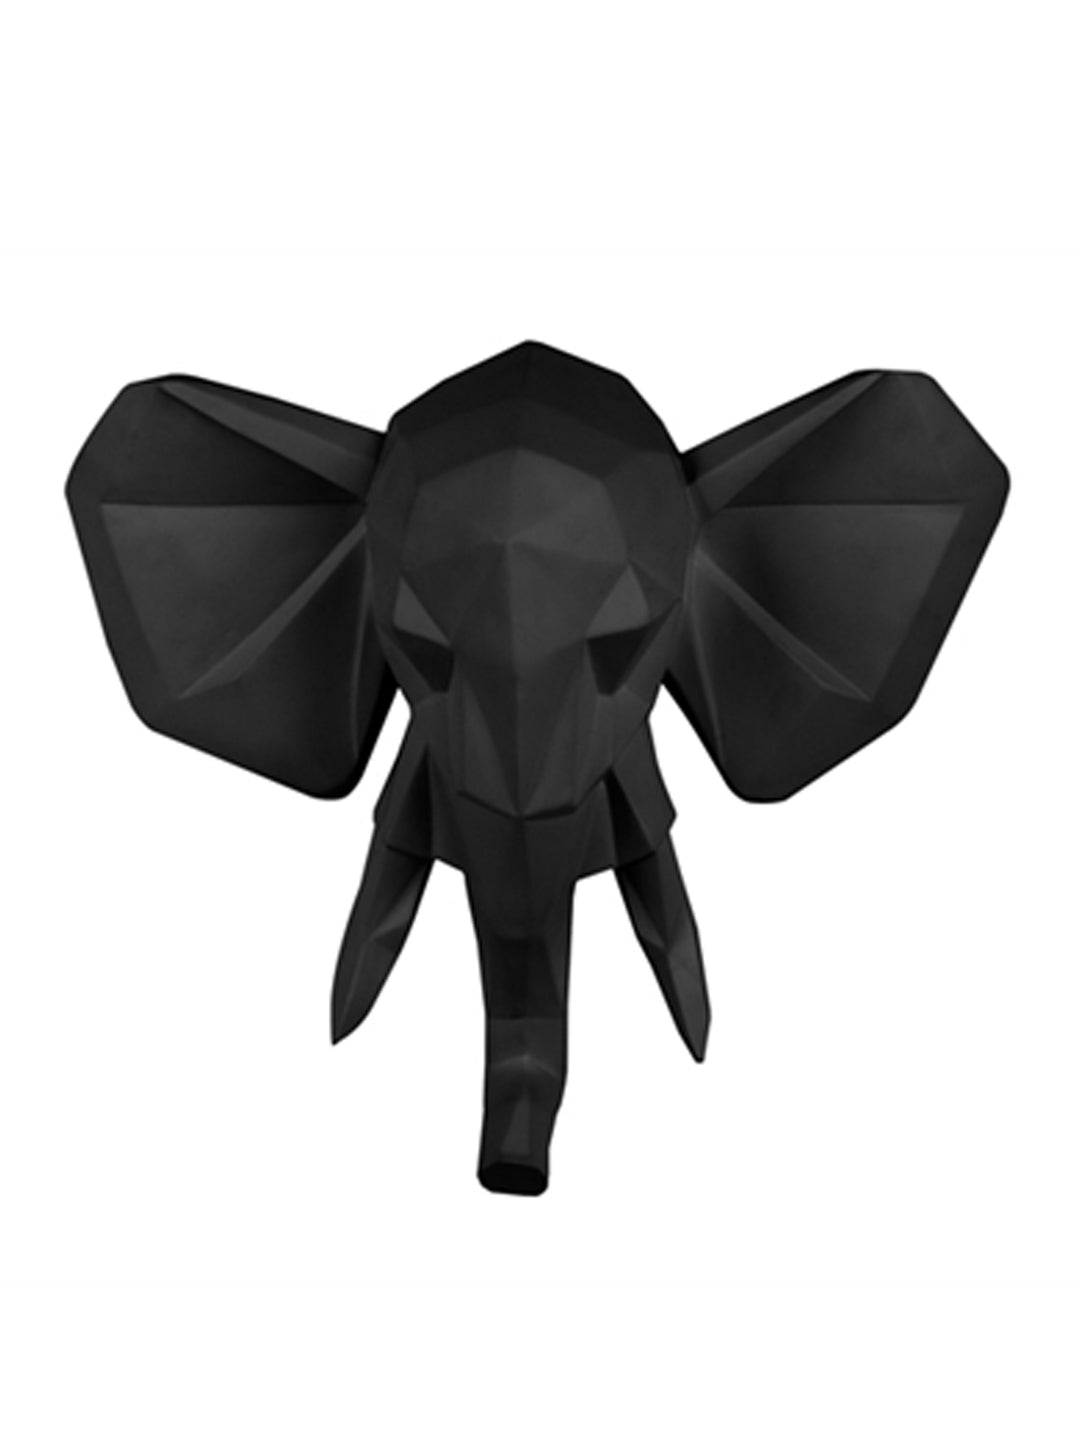 Elephant Wall Head, geometric elephant 